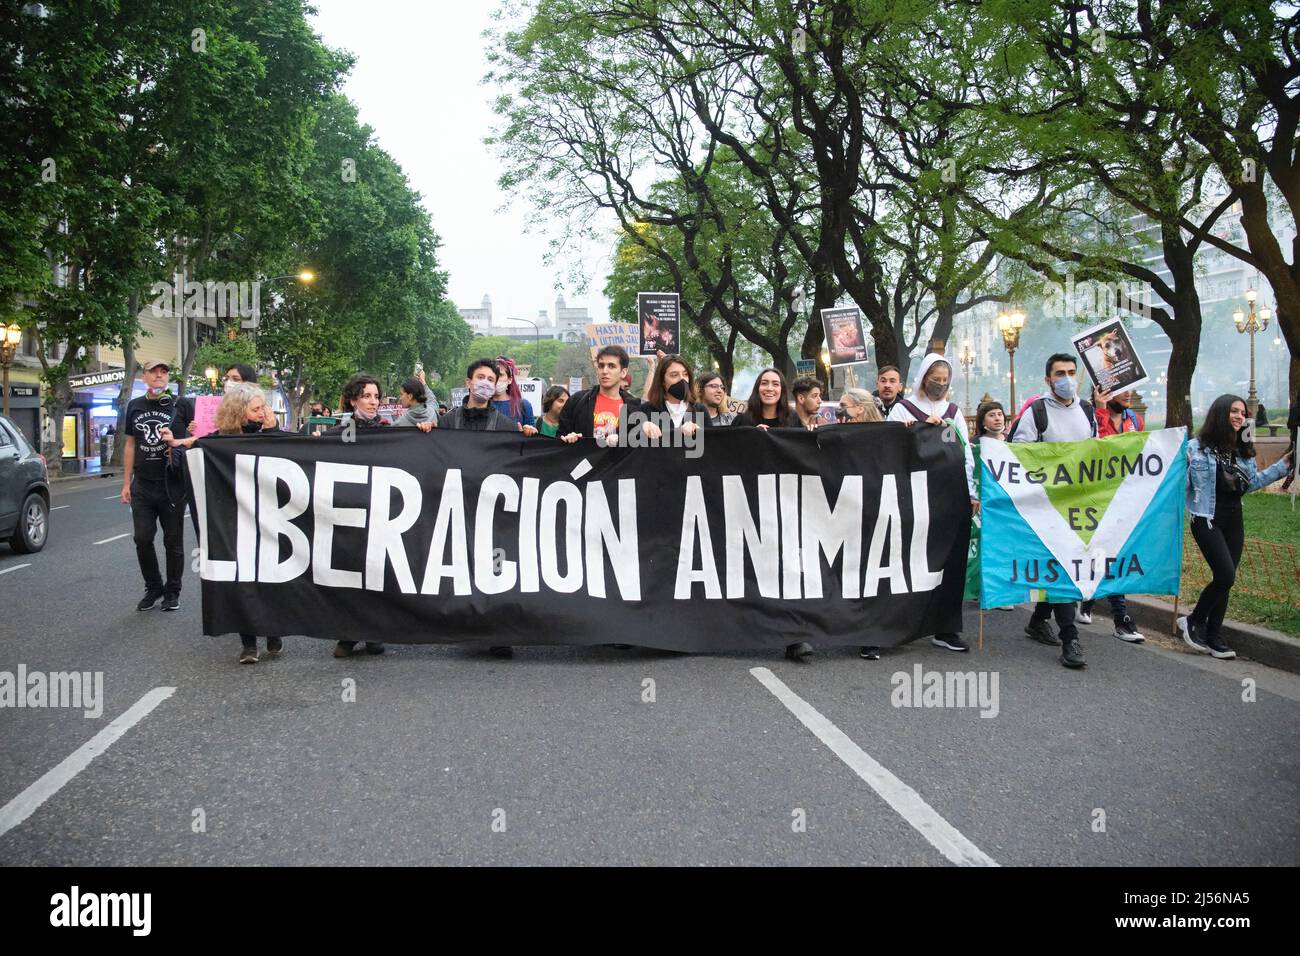 Buenos Aires, Argentina; 1 novembre 2021: Giornata mondiale del Vegan. Persone che marciano con striscioni: La liberazione degli animali. Il veganismo è giustizia. Foto Stock